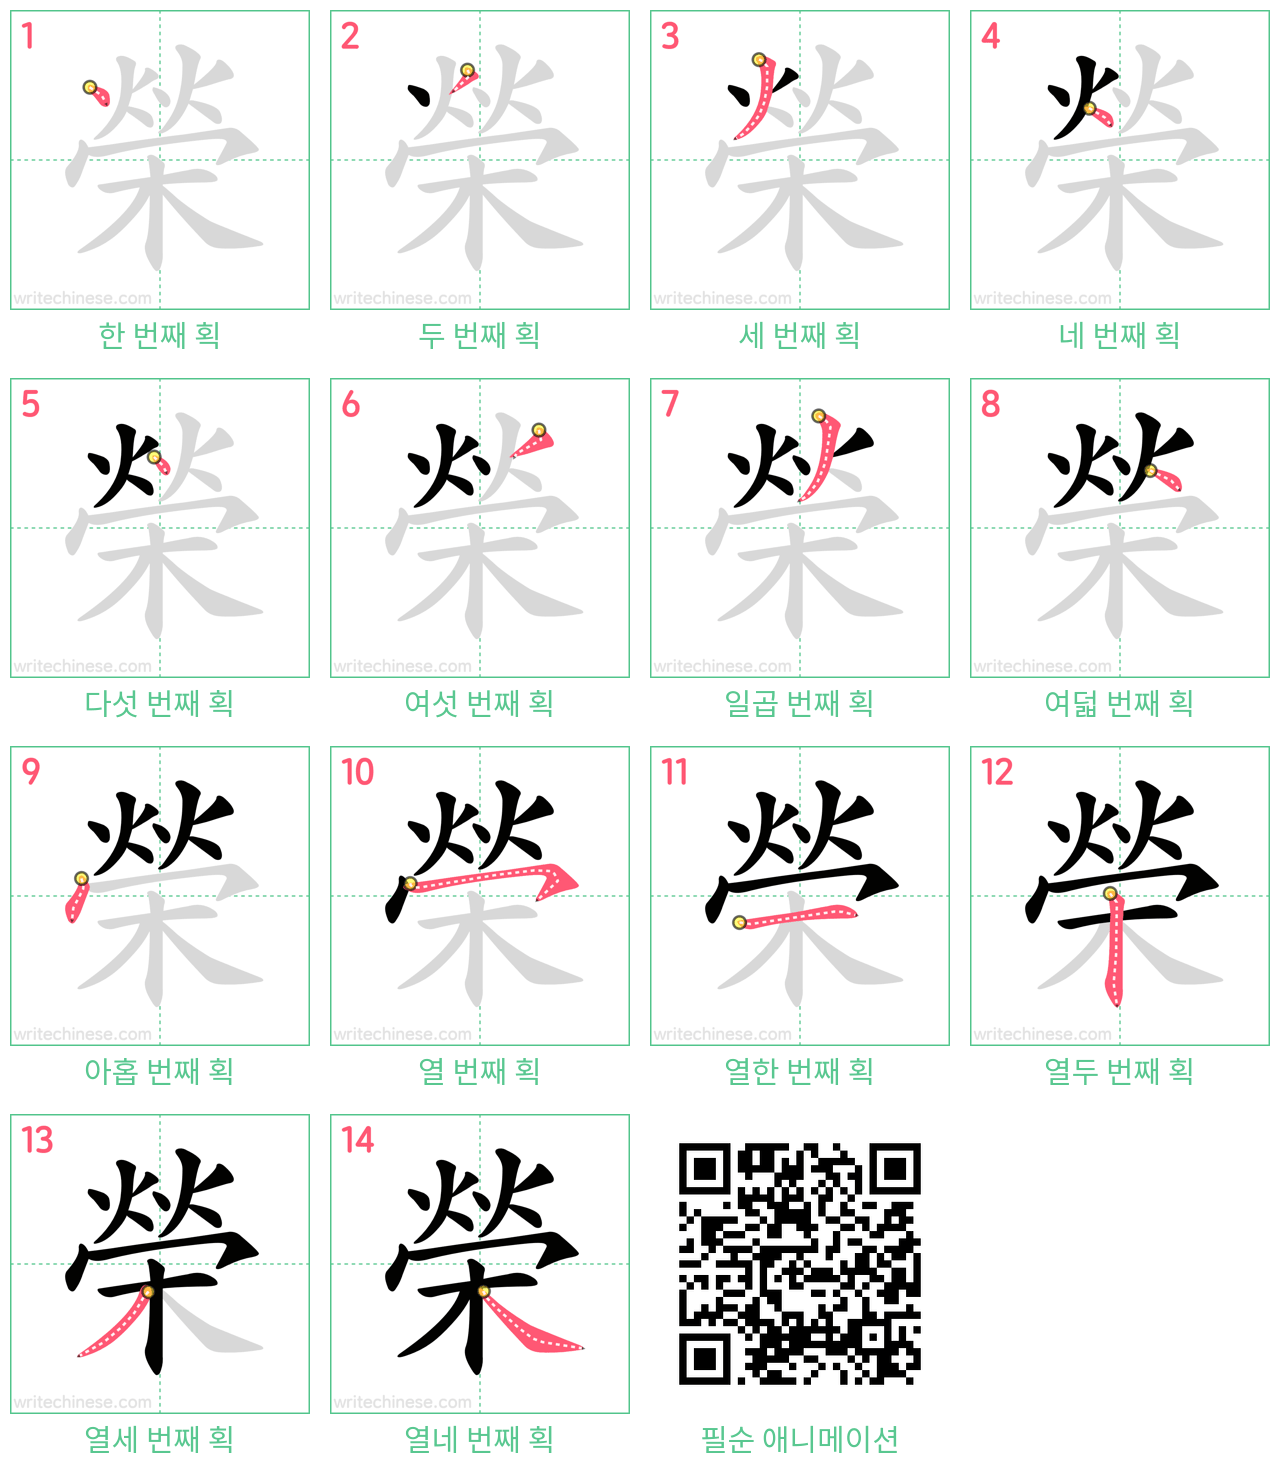 榮 step-by-step stroke order diagrams